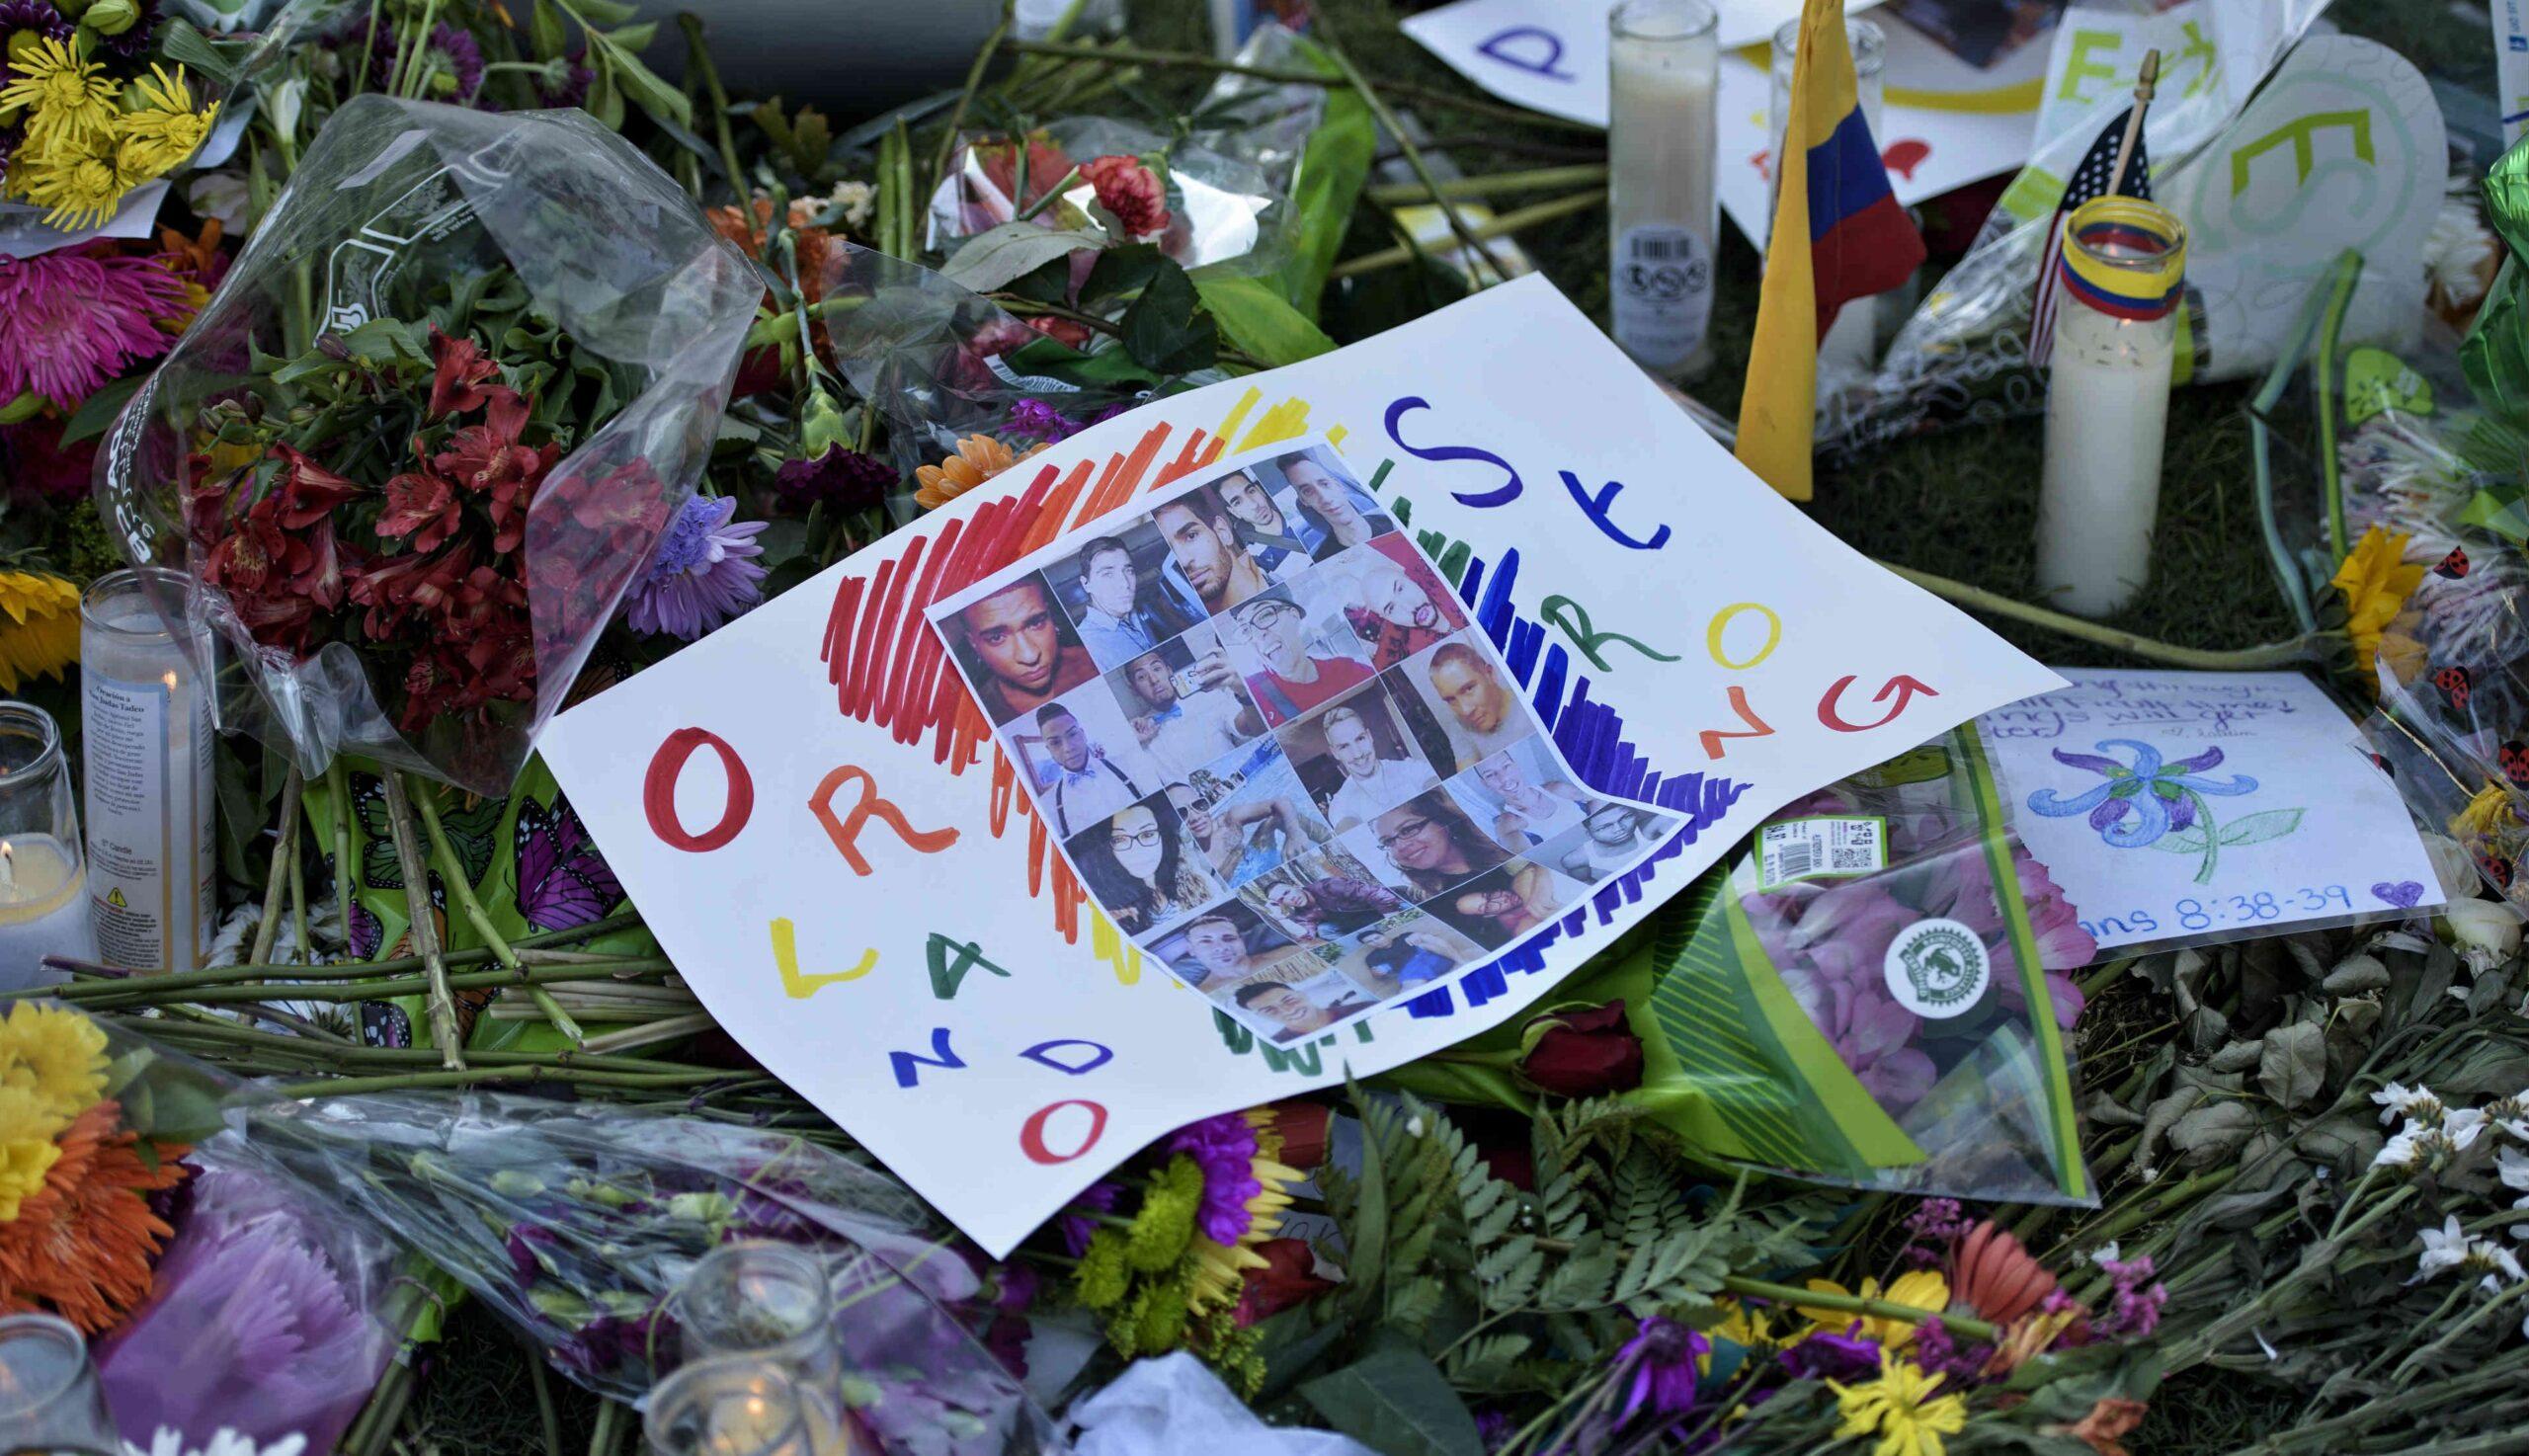 La tragedia llegó a mi familia, dice hermano de mexicano muerto en bar de Orlando